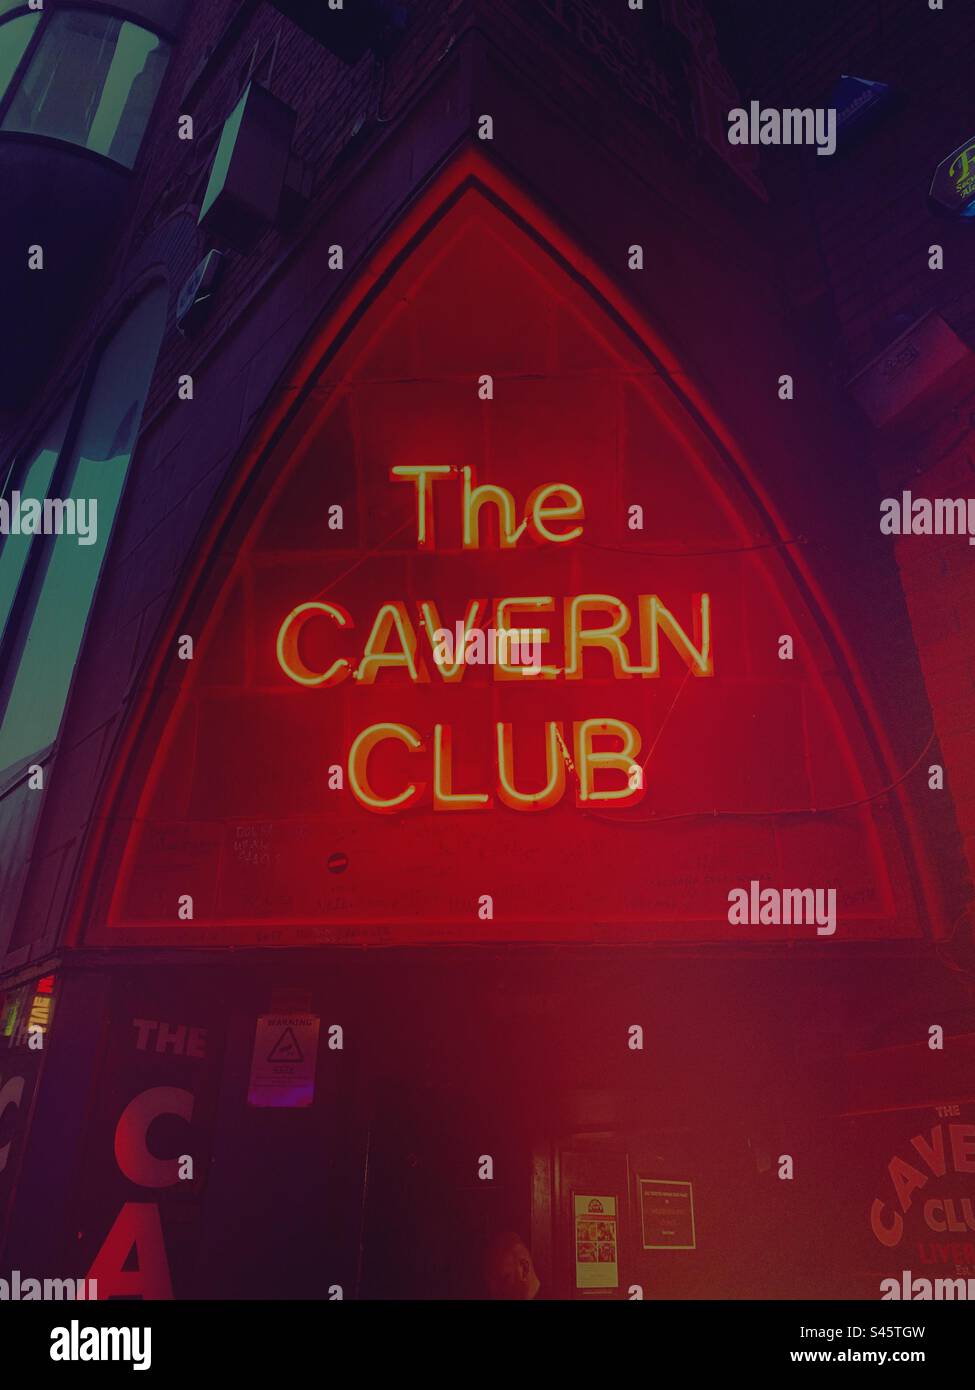 Le Cavern Club signe rouge néon dans Mathew Street, Liverpool Angleterre Royaume-Uni - le célèbre club de musique live des Beatles Banque D'Images